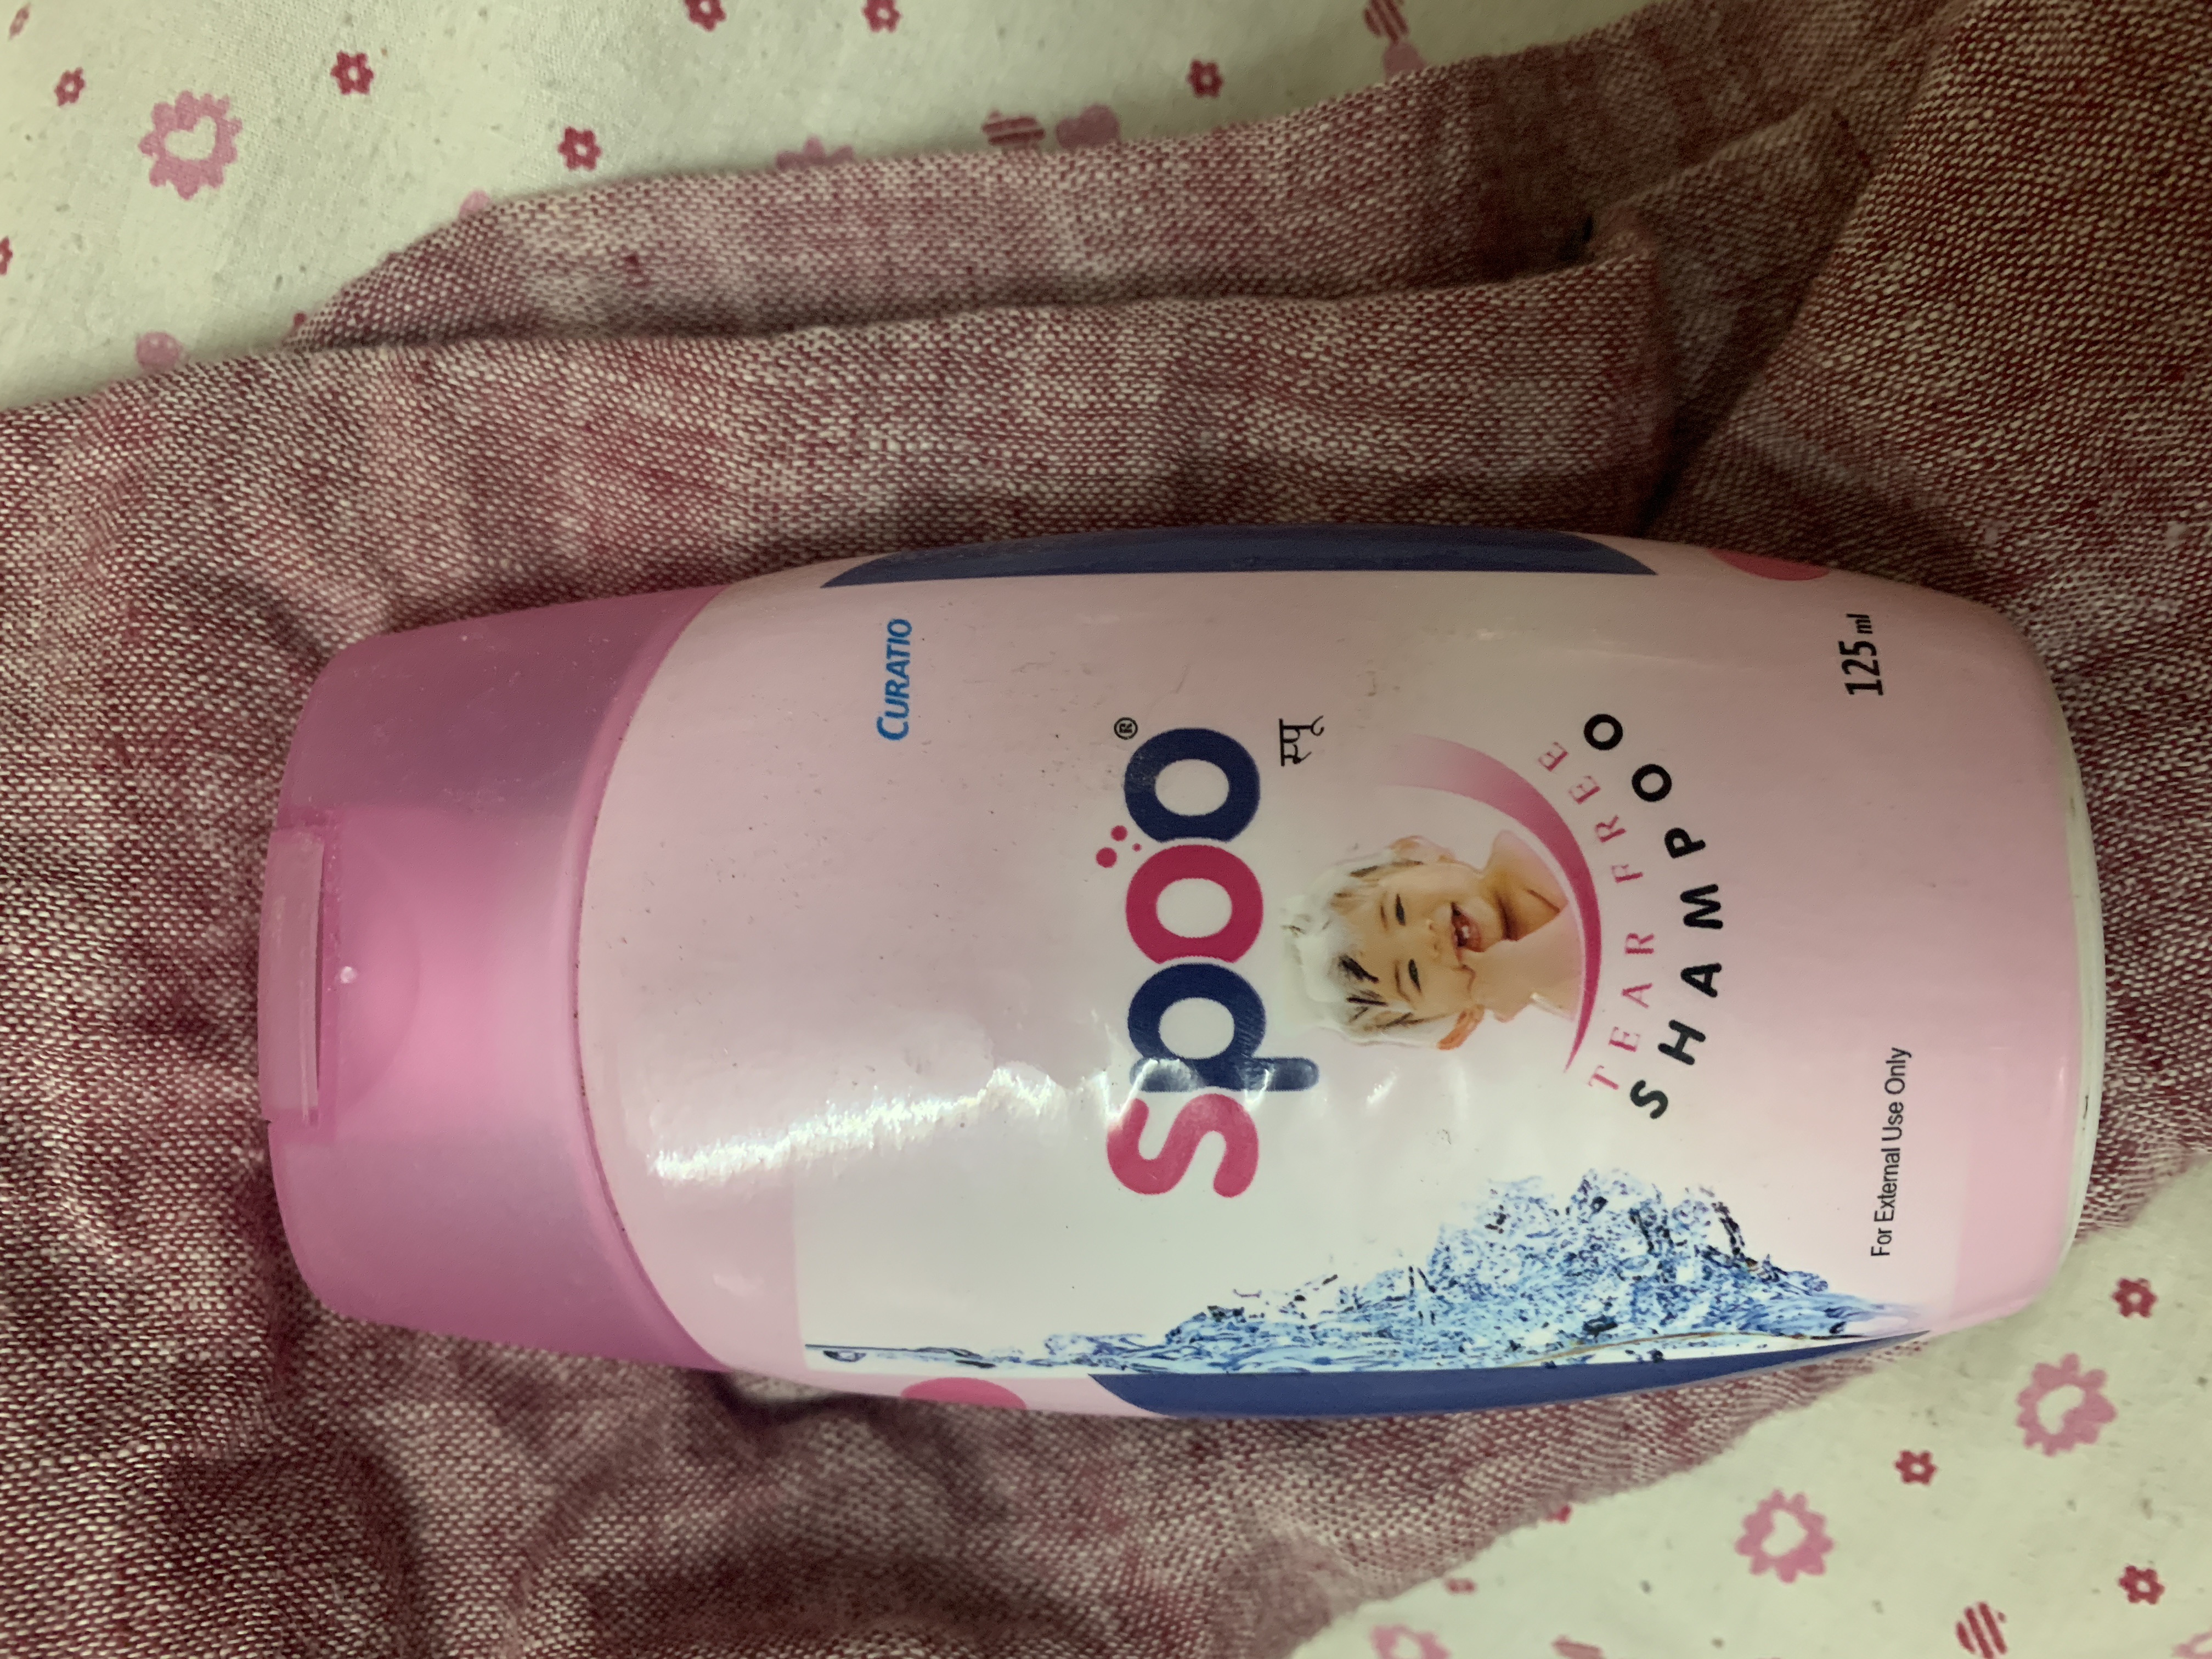 tedibar shampoo